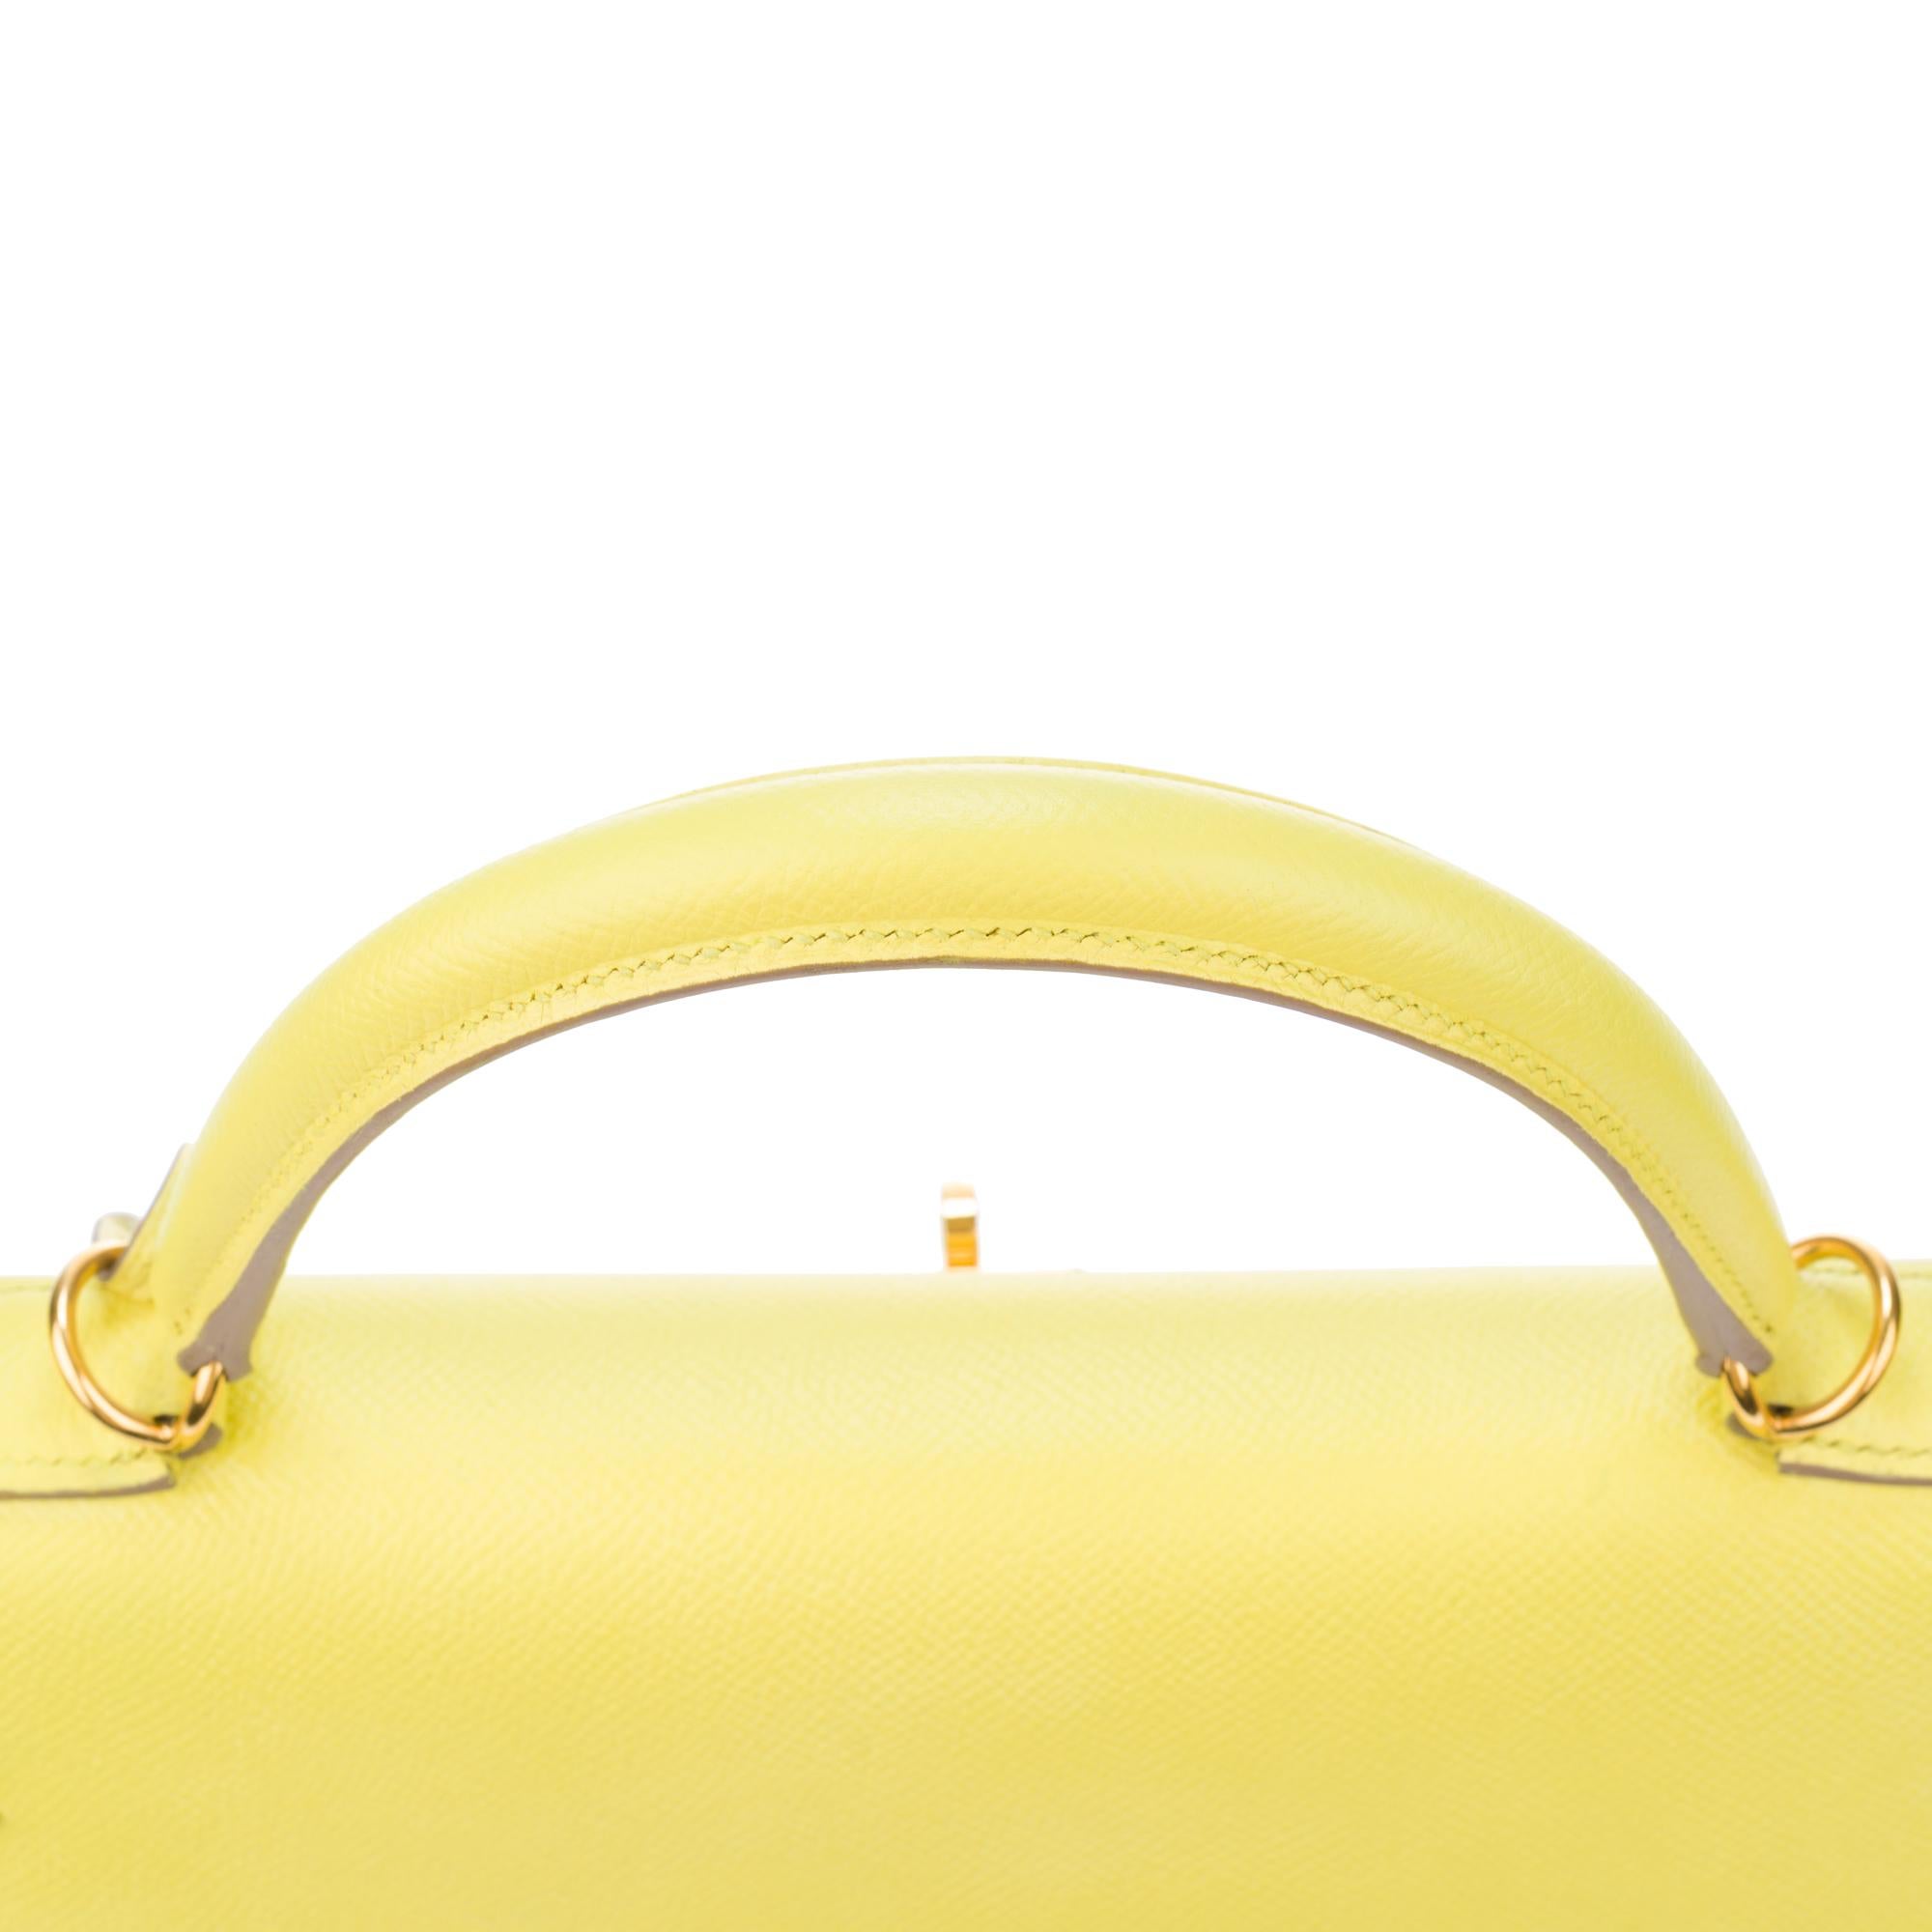 Erstaunlich Hermès Kelly 35 Handtasche mit Gurt in epsom gelb Zitrone Farbe, GHW ! 3